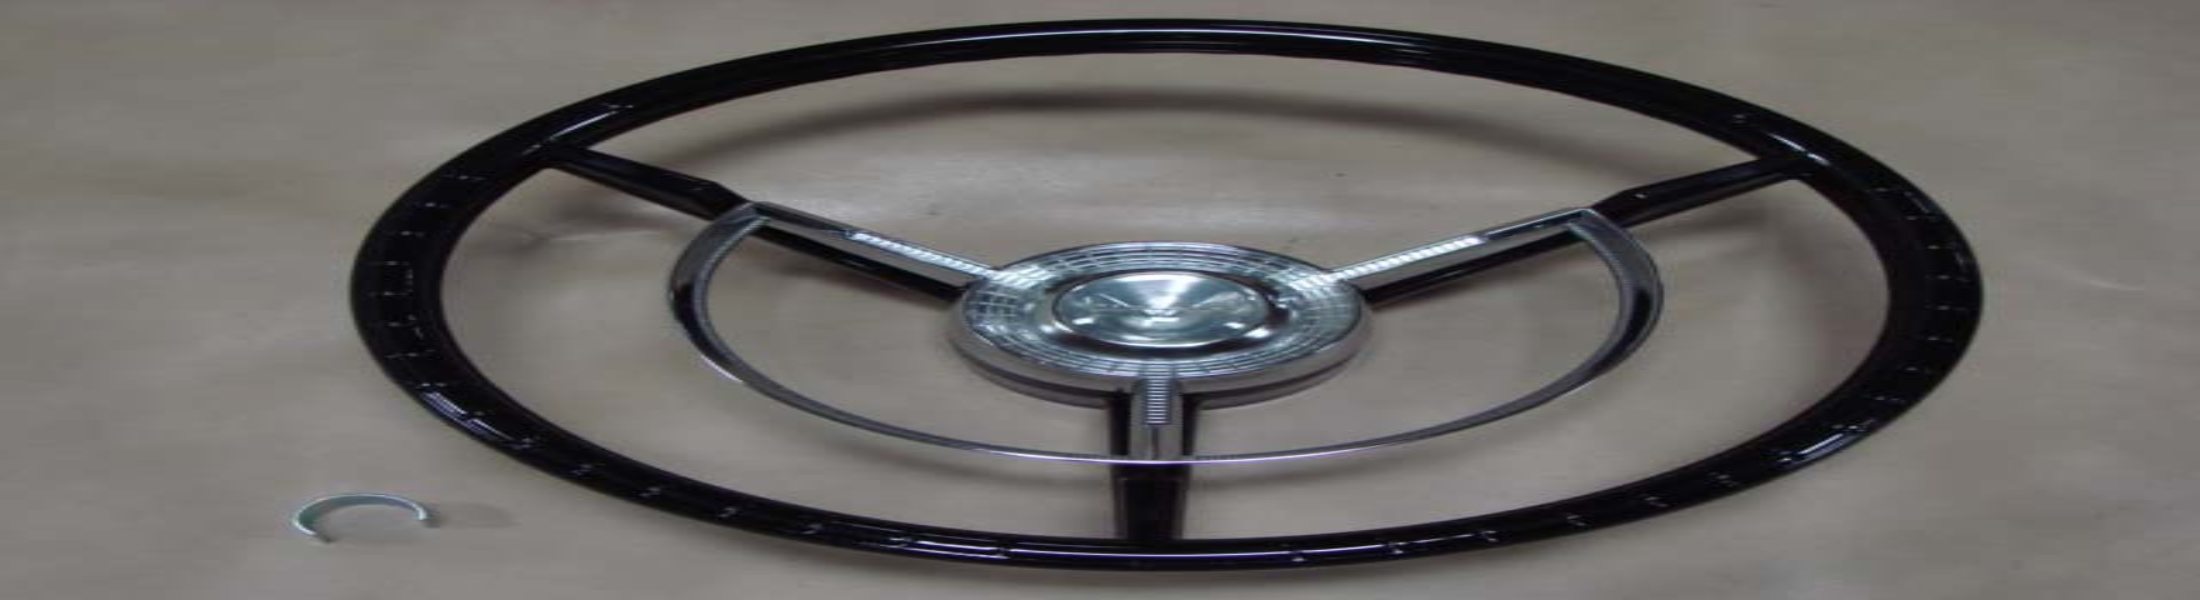 1960 thunderbird steering wheel